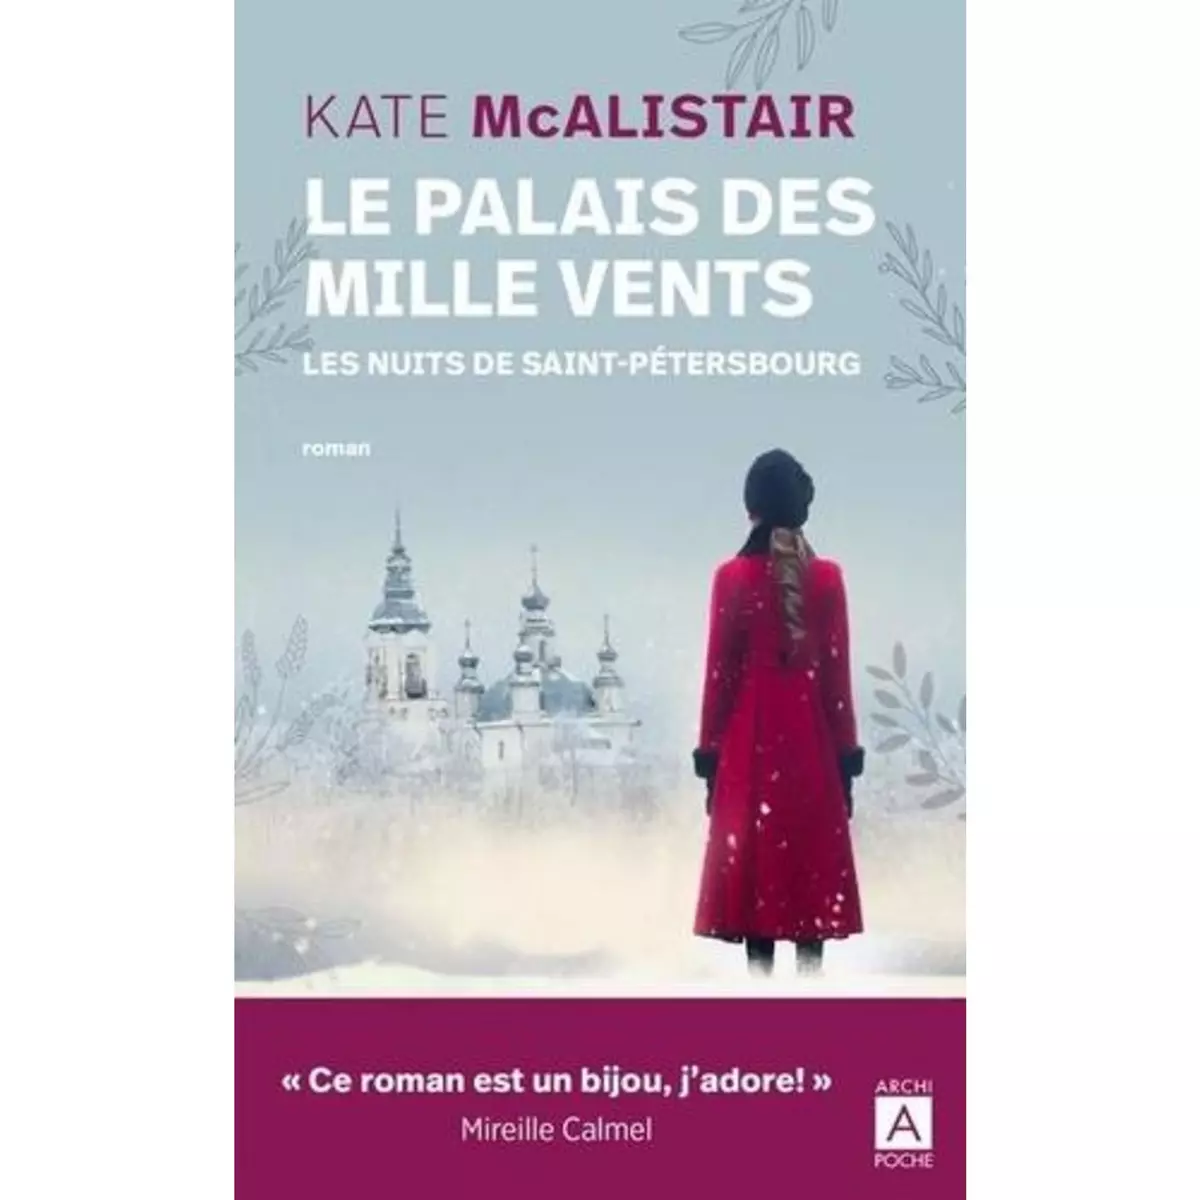  LE PALAIS DES MILLE VENTS TOME 2 : LES NUITS DE SAINT-PETERSBOURG, McAlistair Kate